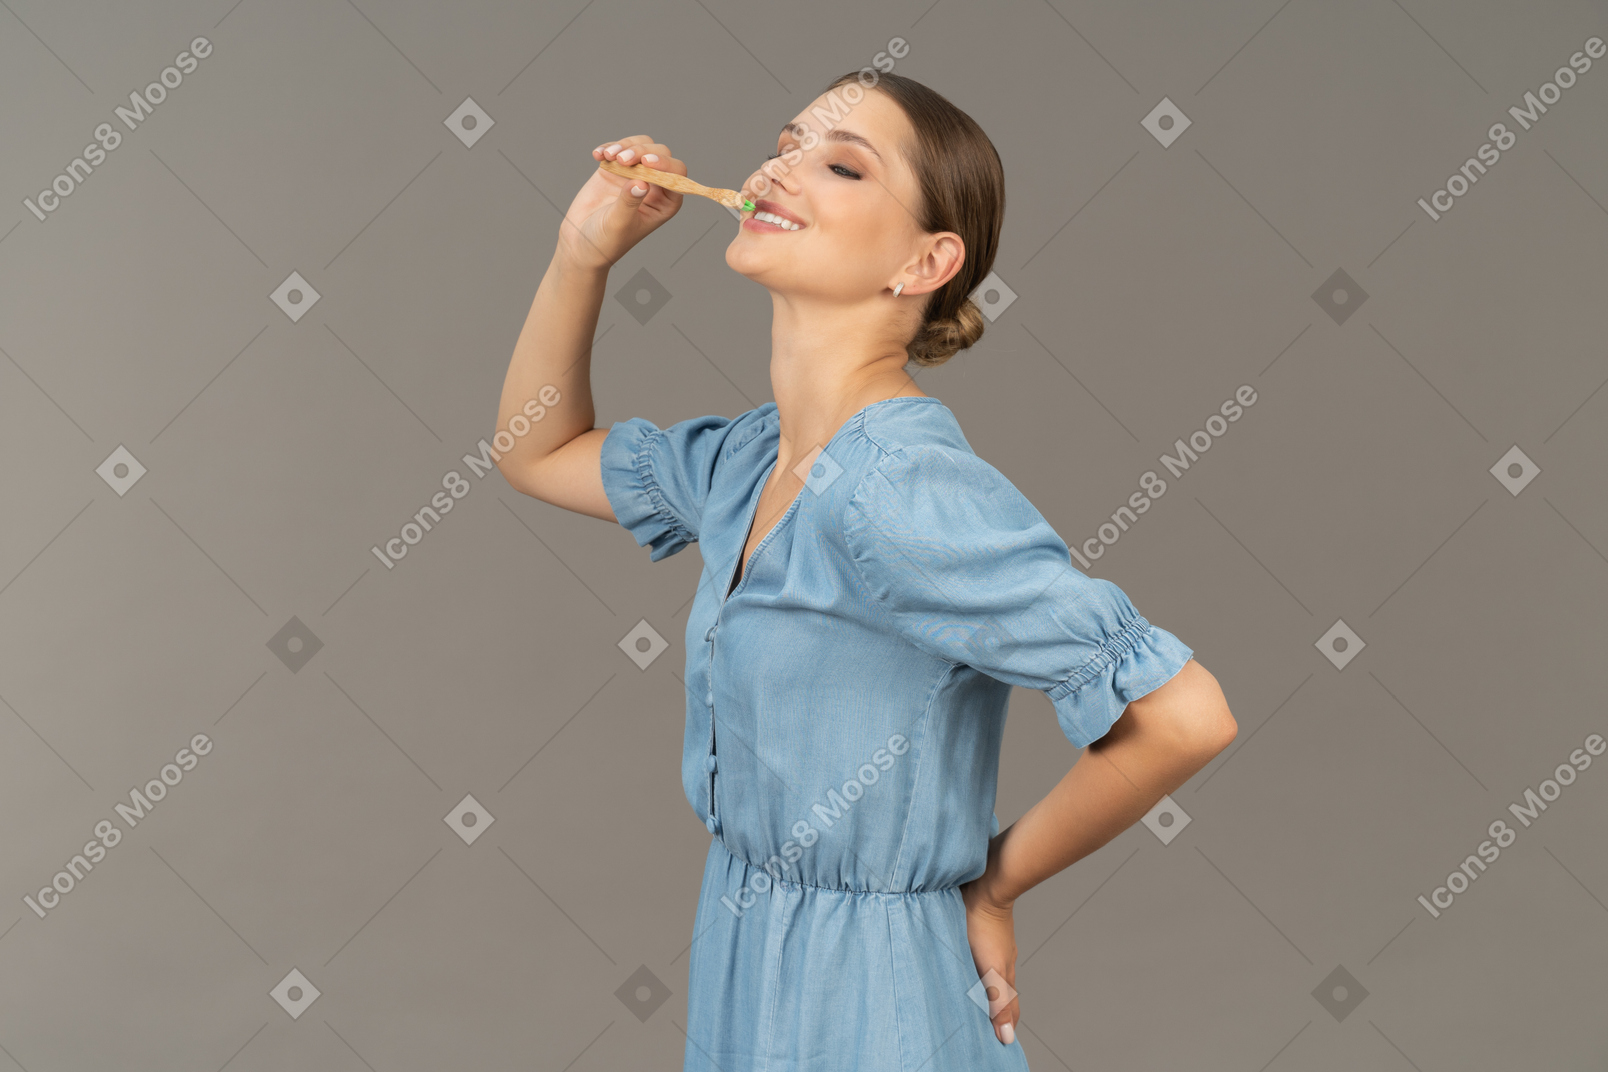 青いドレスを着た若い女性が歯を磨いている様子の4分の3のビュー